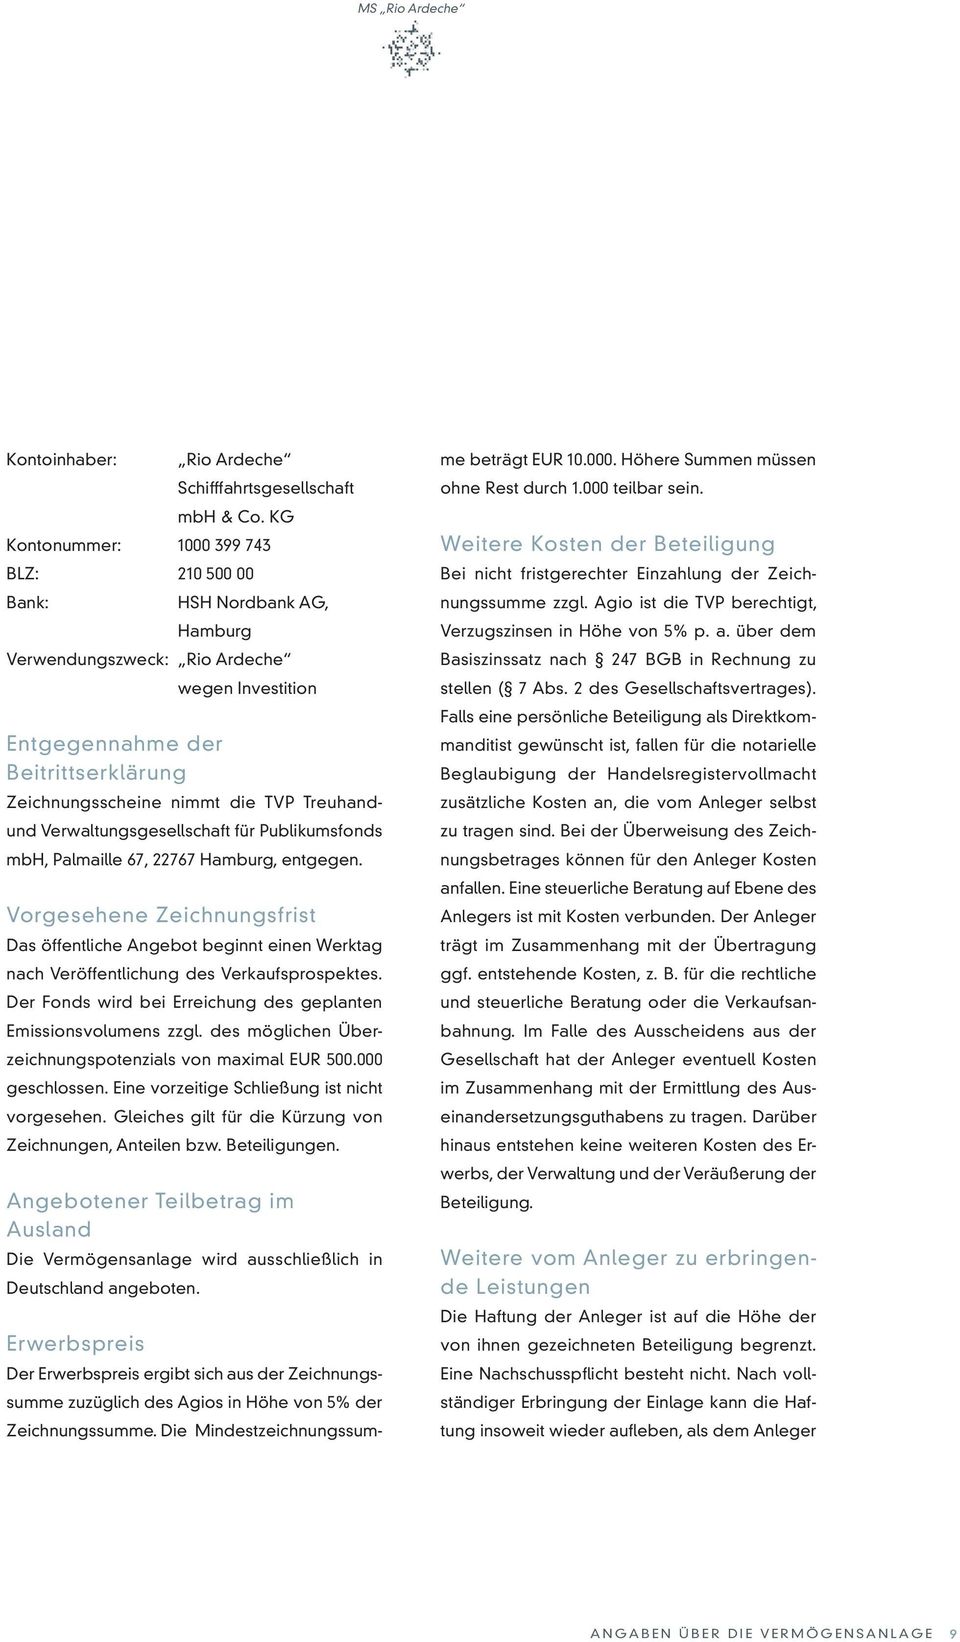 Treuhandund Verwaltungsgesellschaft für Publikumsfonds mbh, Palmaille 67, 22767 Hamburg, entgegen.